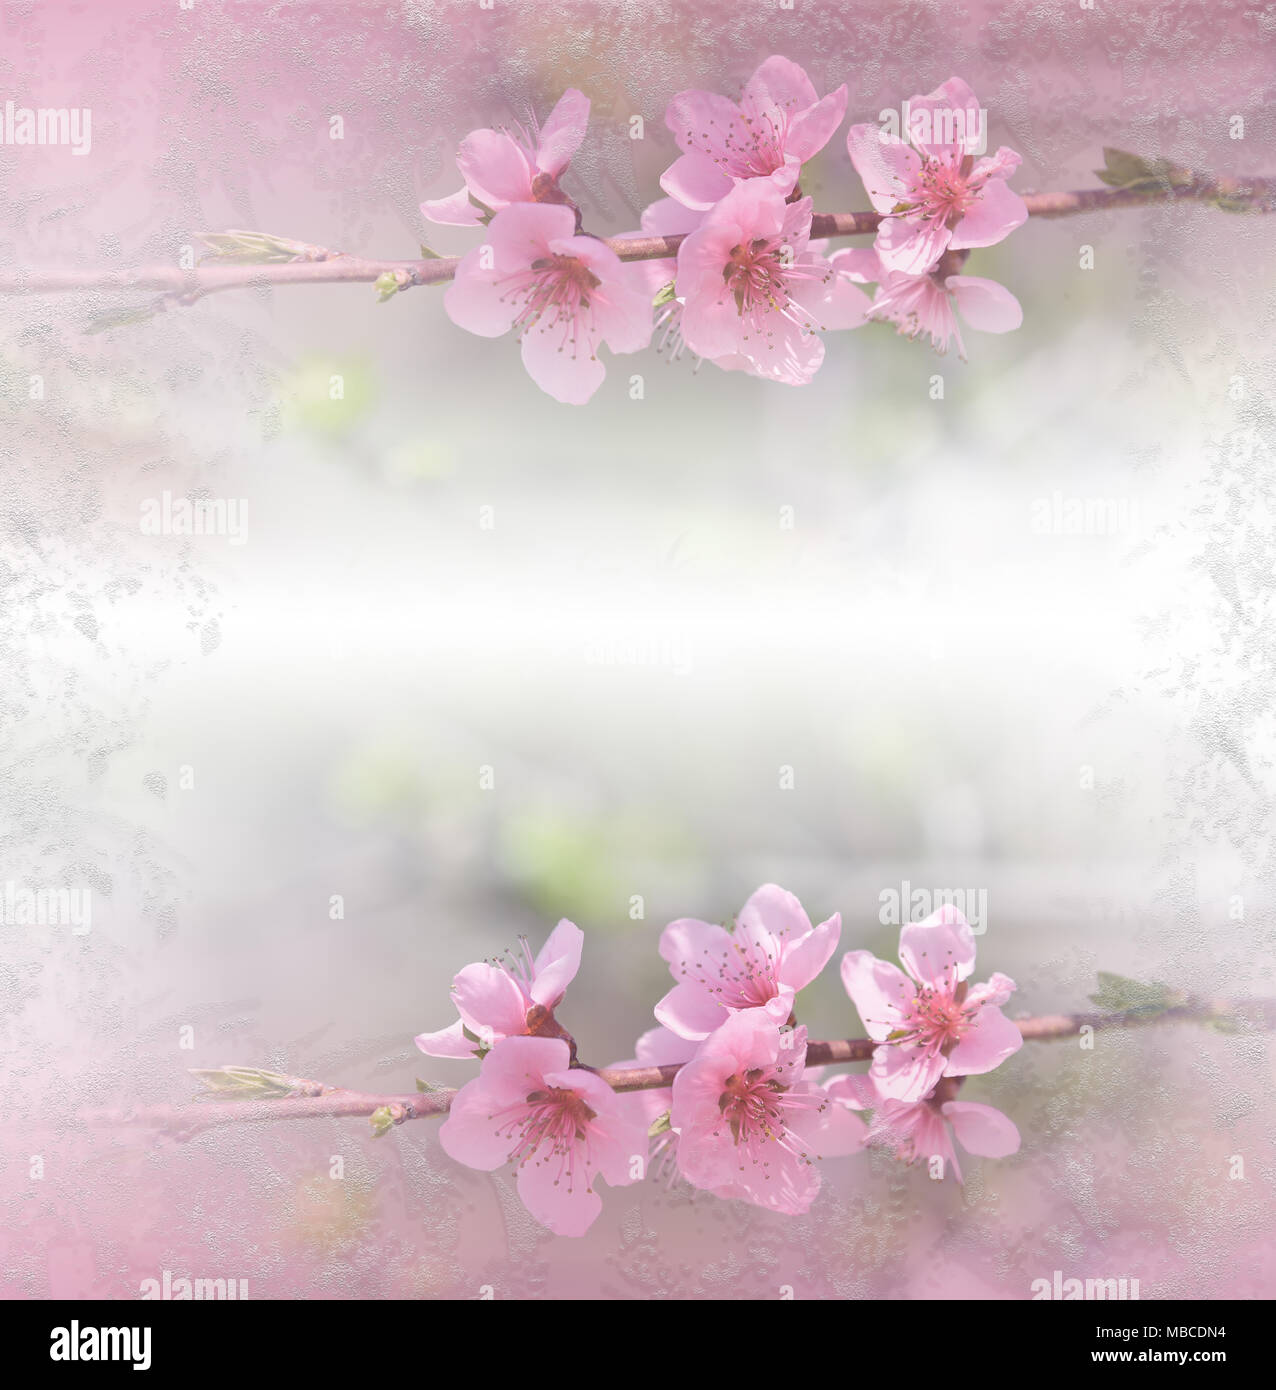 Kunst Abstrakte spring floral background für Design. die Feder Grenze Hintergrund mit rosa Blüte. Ruhige closeup Kunst Fotografie. Floral fantasy Design. Stockfoto